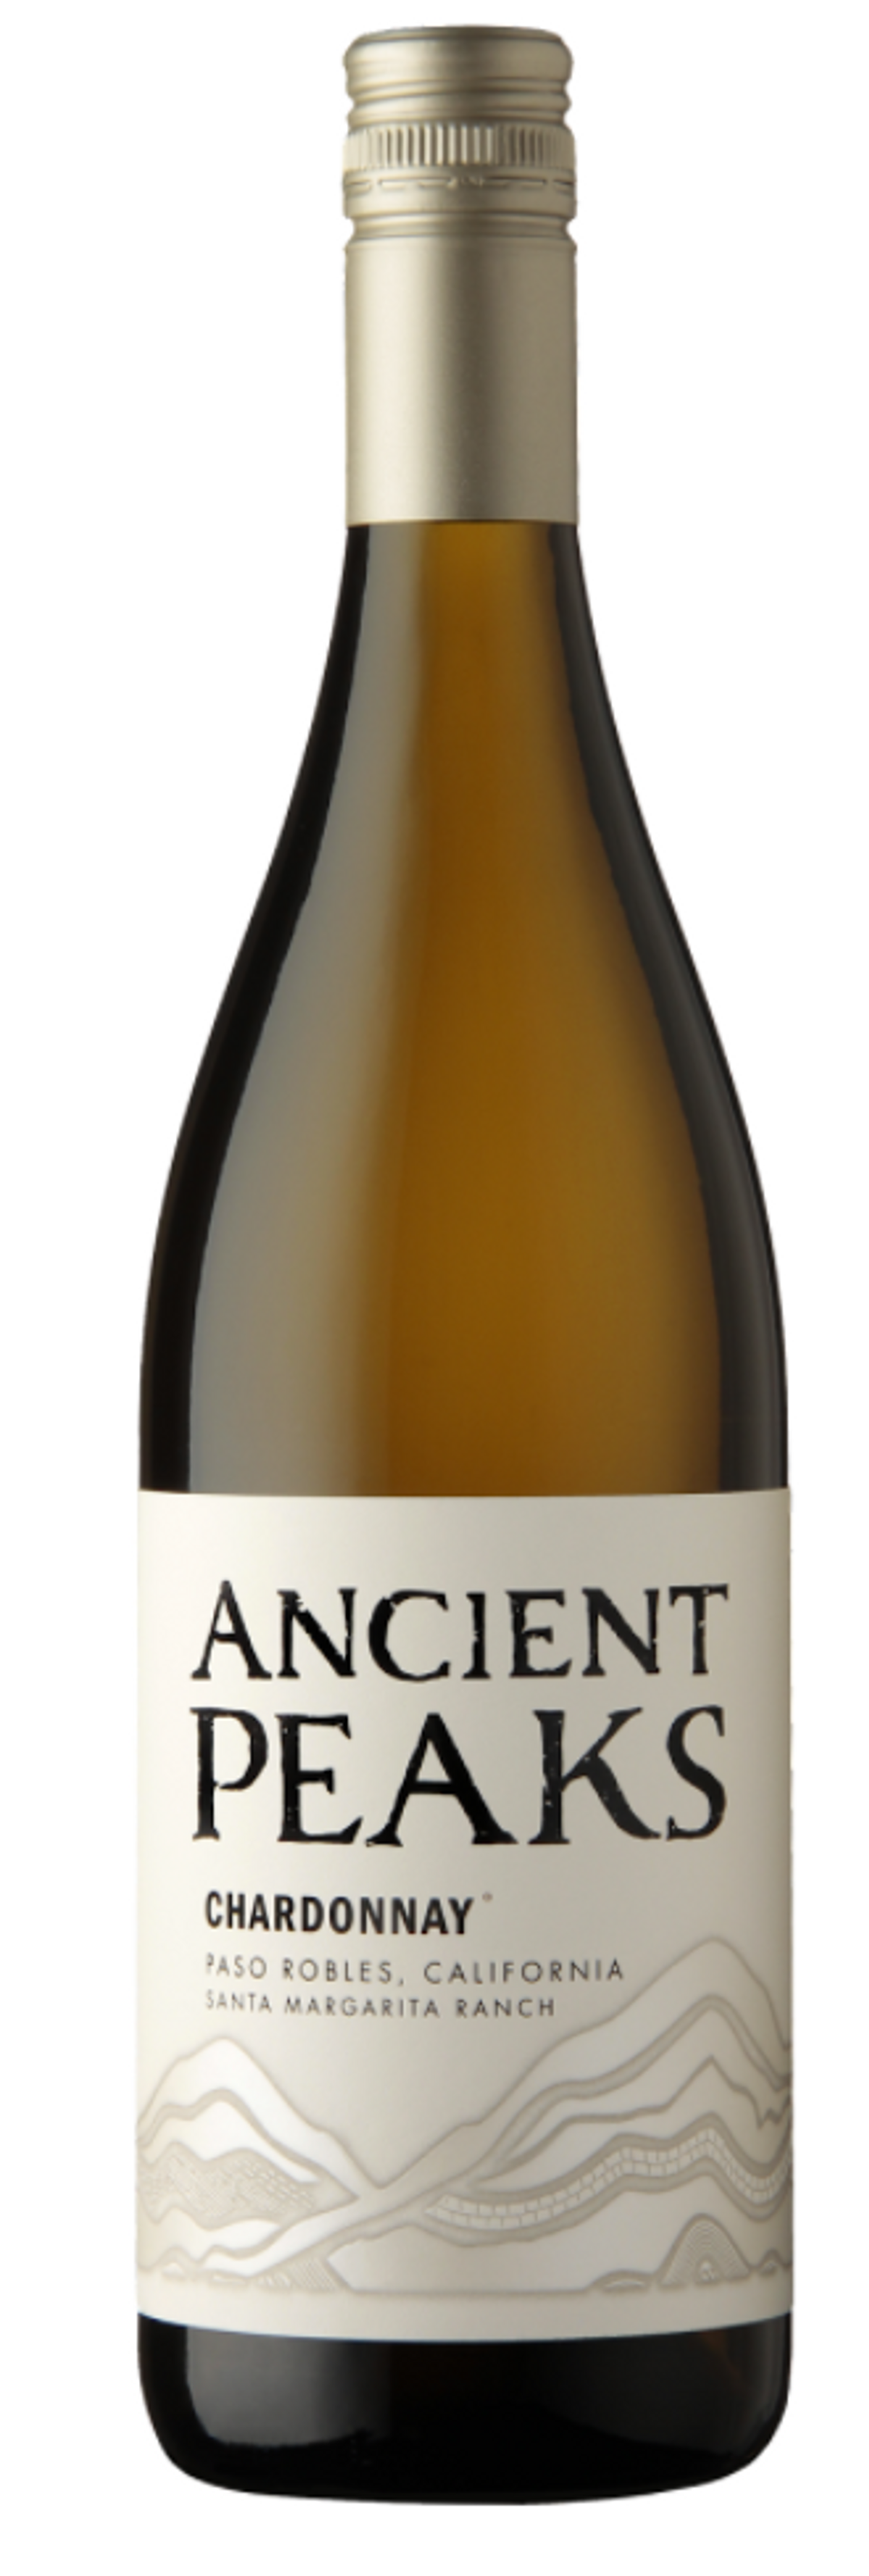 Ancient Peaks 2018 Chardonnay